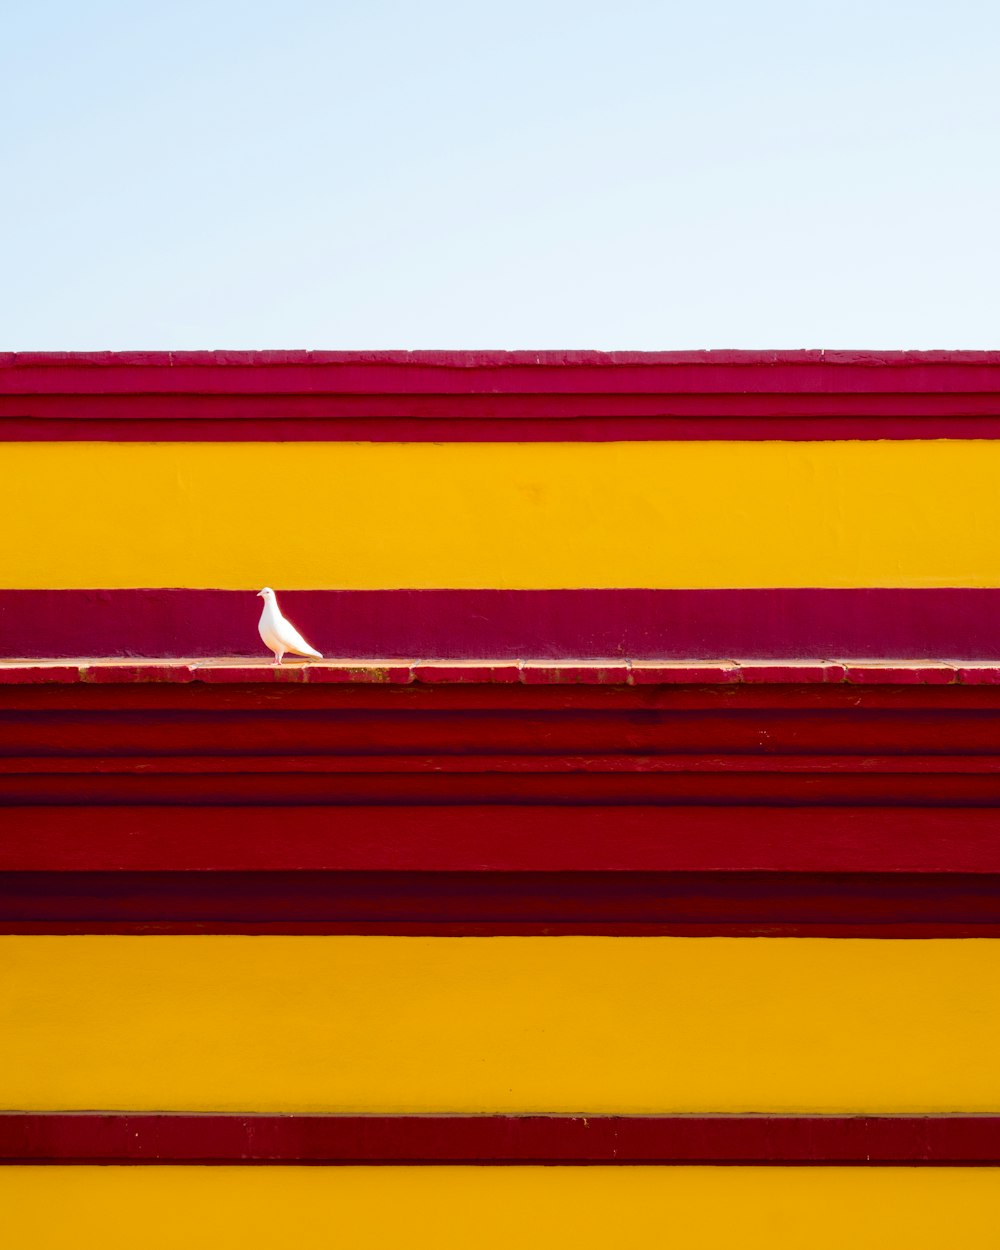 빨간색과 노란색 건물 위에 앉아 있는 하얀 새